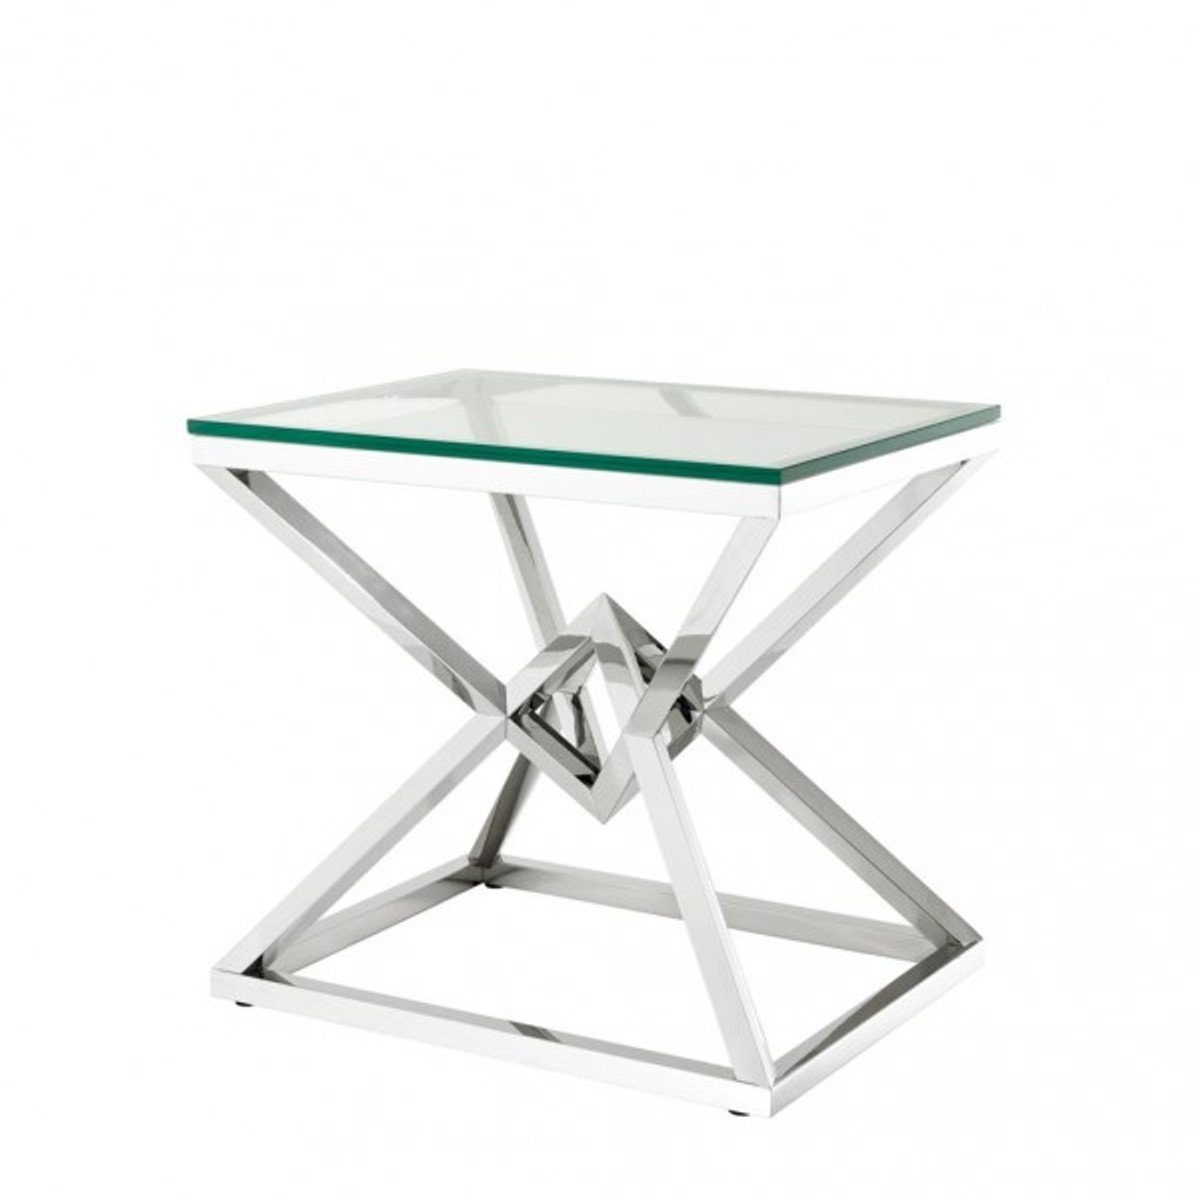 Casa Padrino Beistelltisch Luxus Beistelltisch Edelstahl Nickel Finish 65 x 50 x H 60 cm - Tisch Möbel